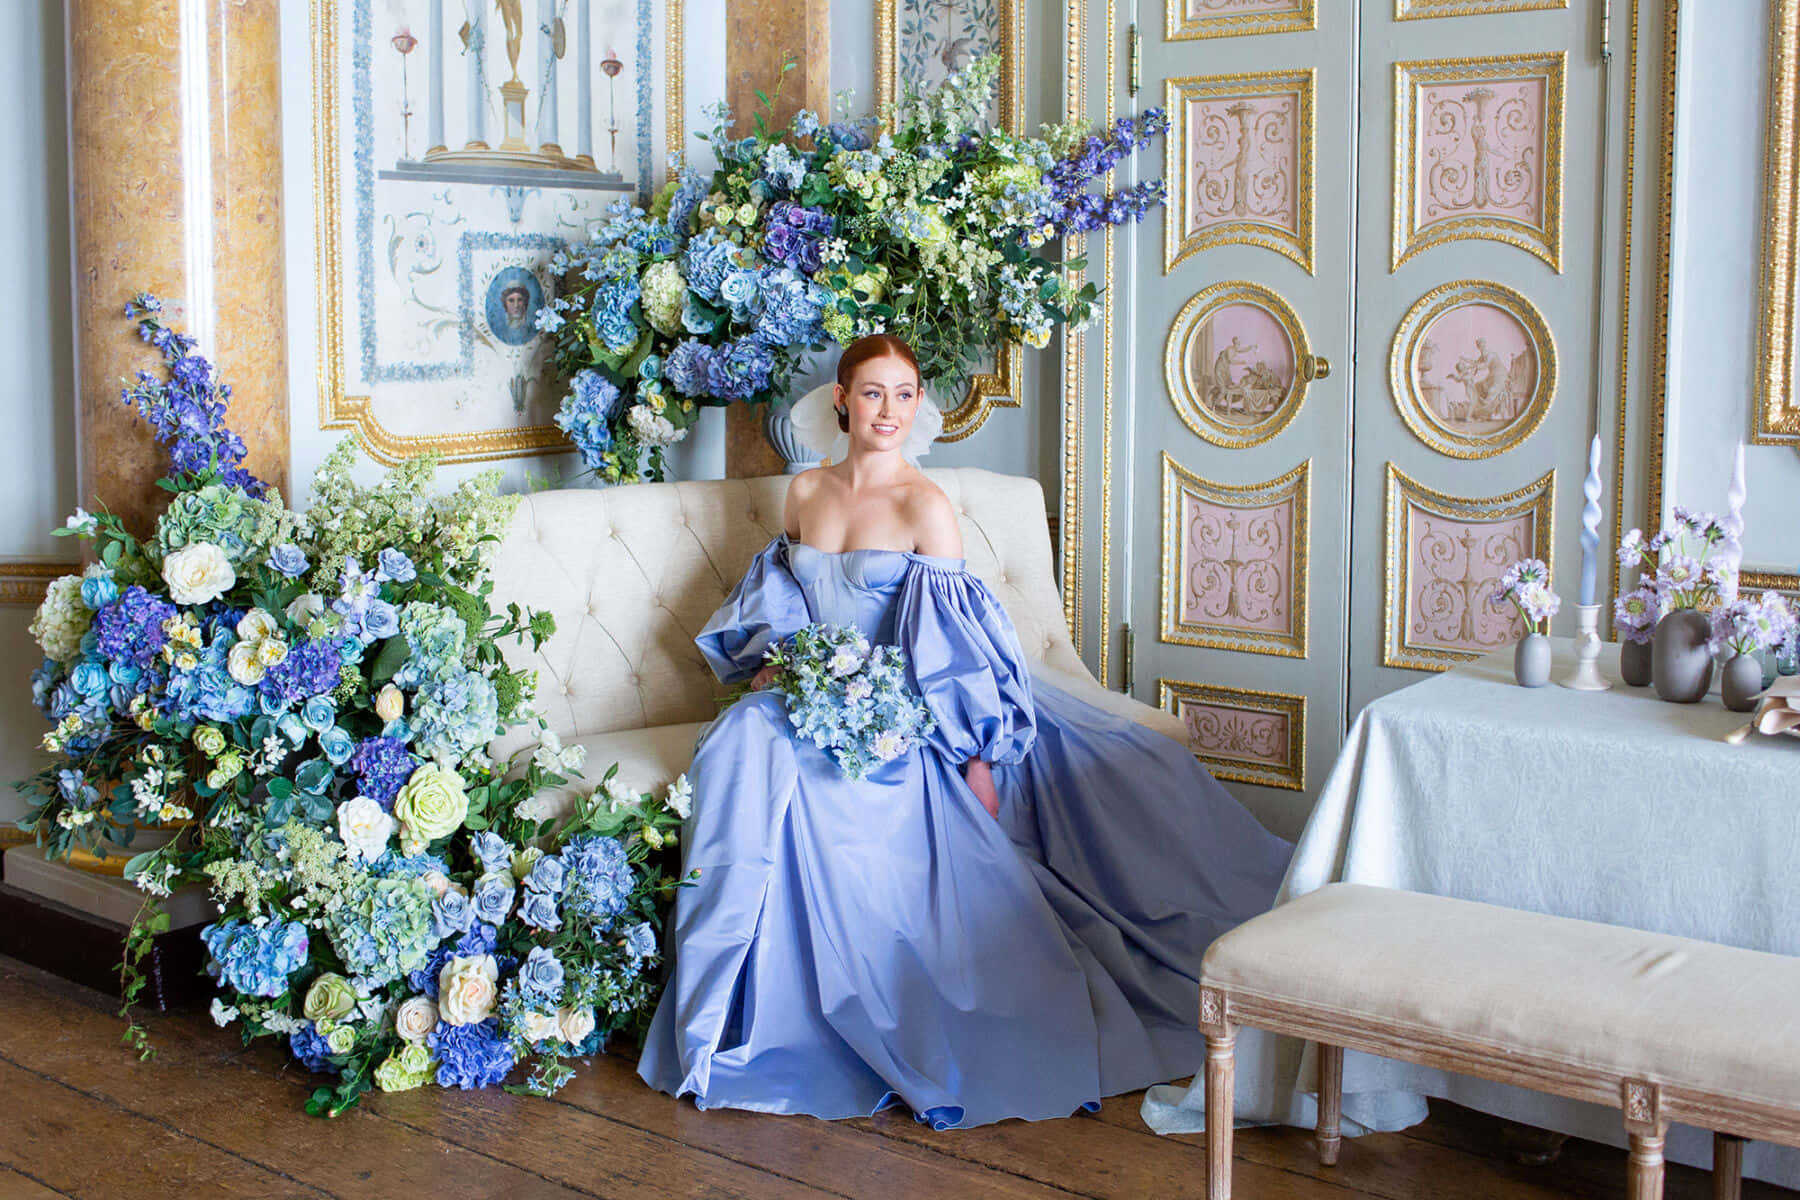 Regency Era Blue Gown Floral Backdrop Wallpaper